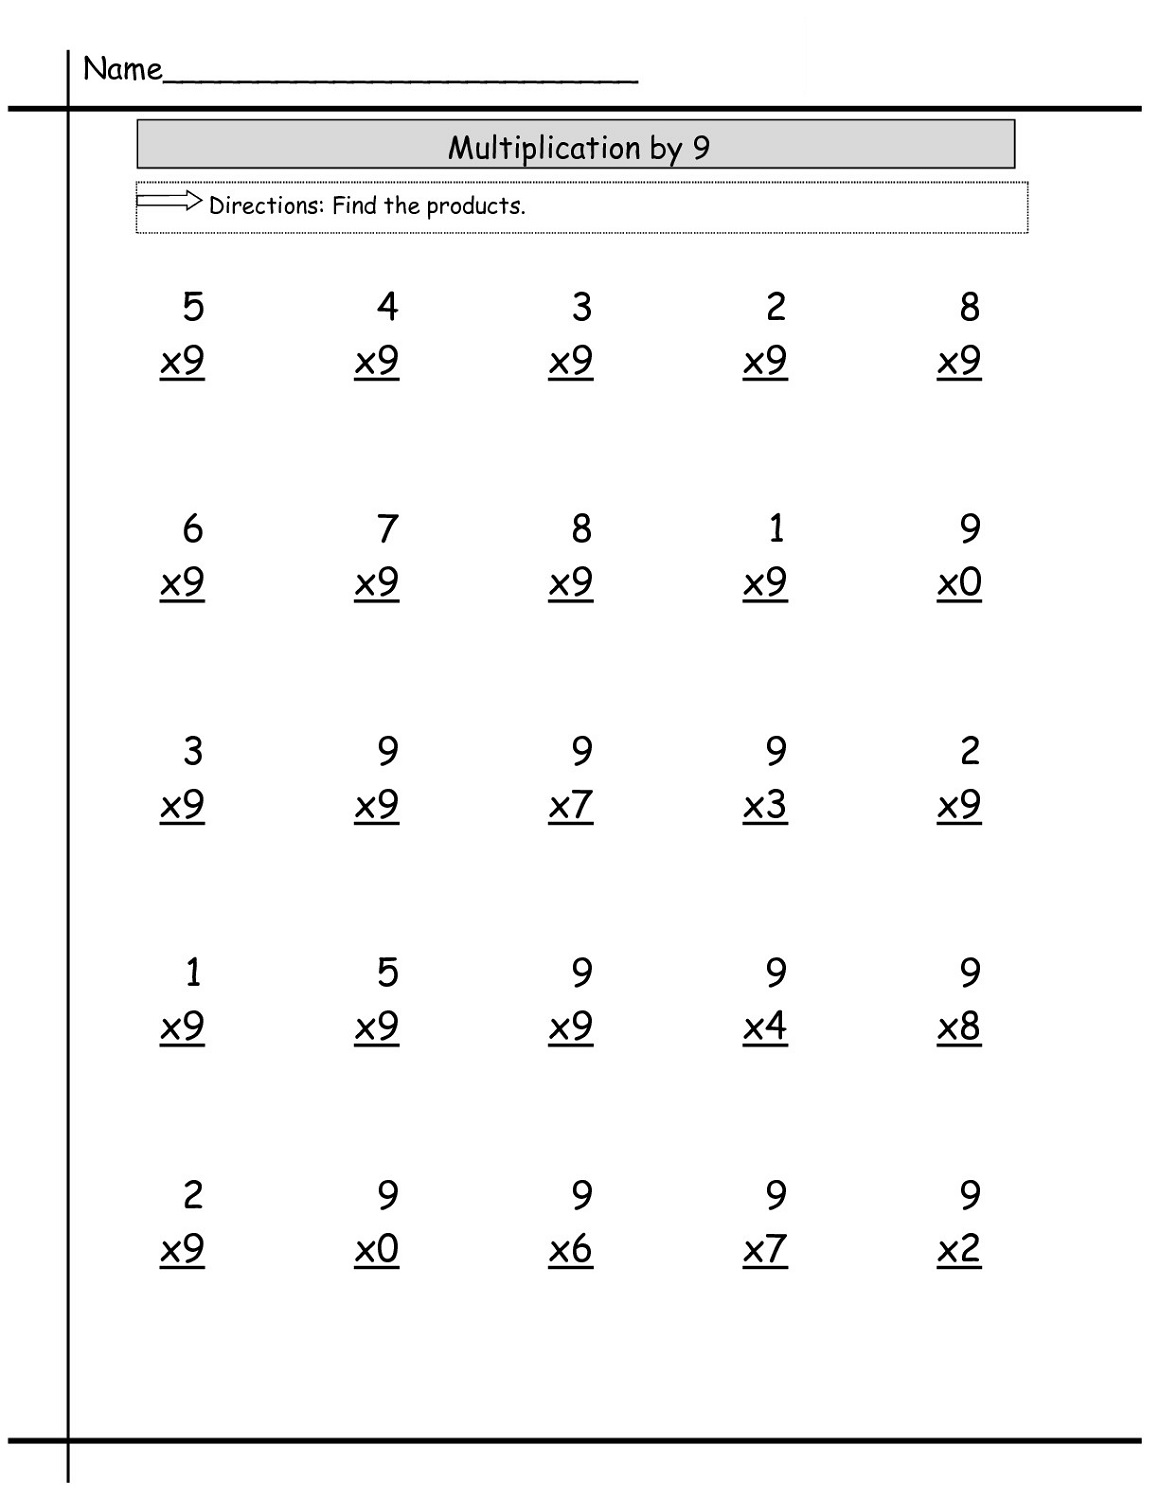 multiply-by-9-worksheet-simple